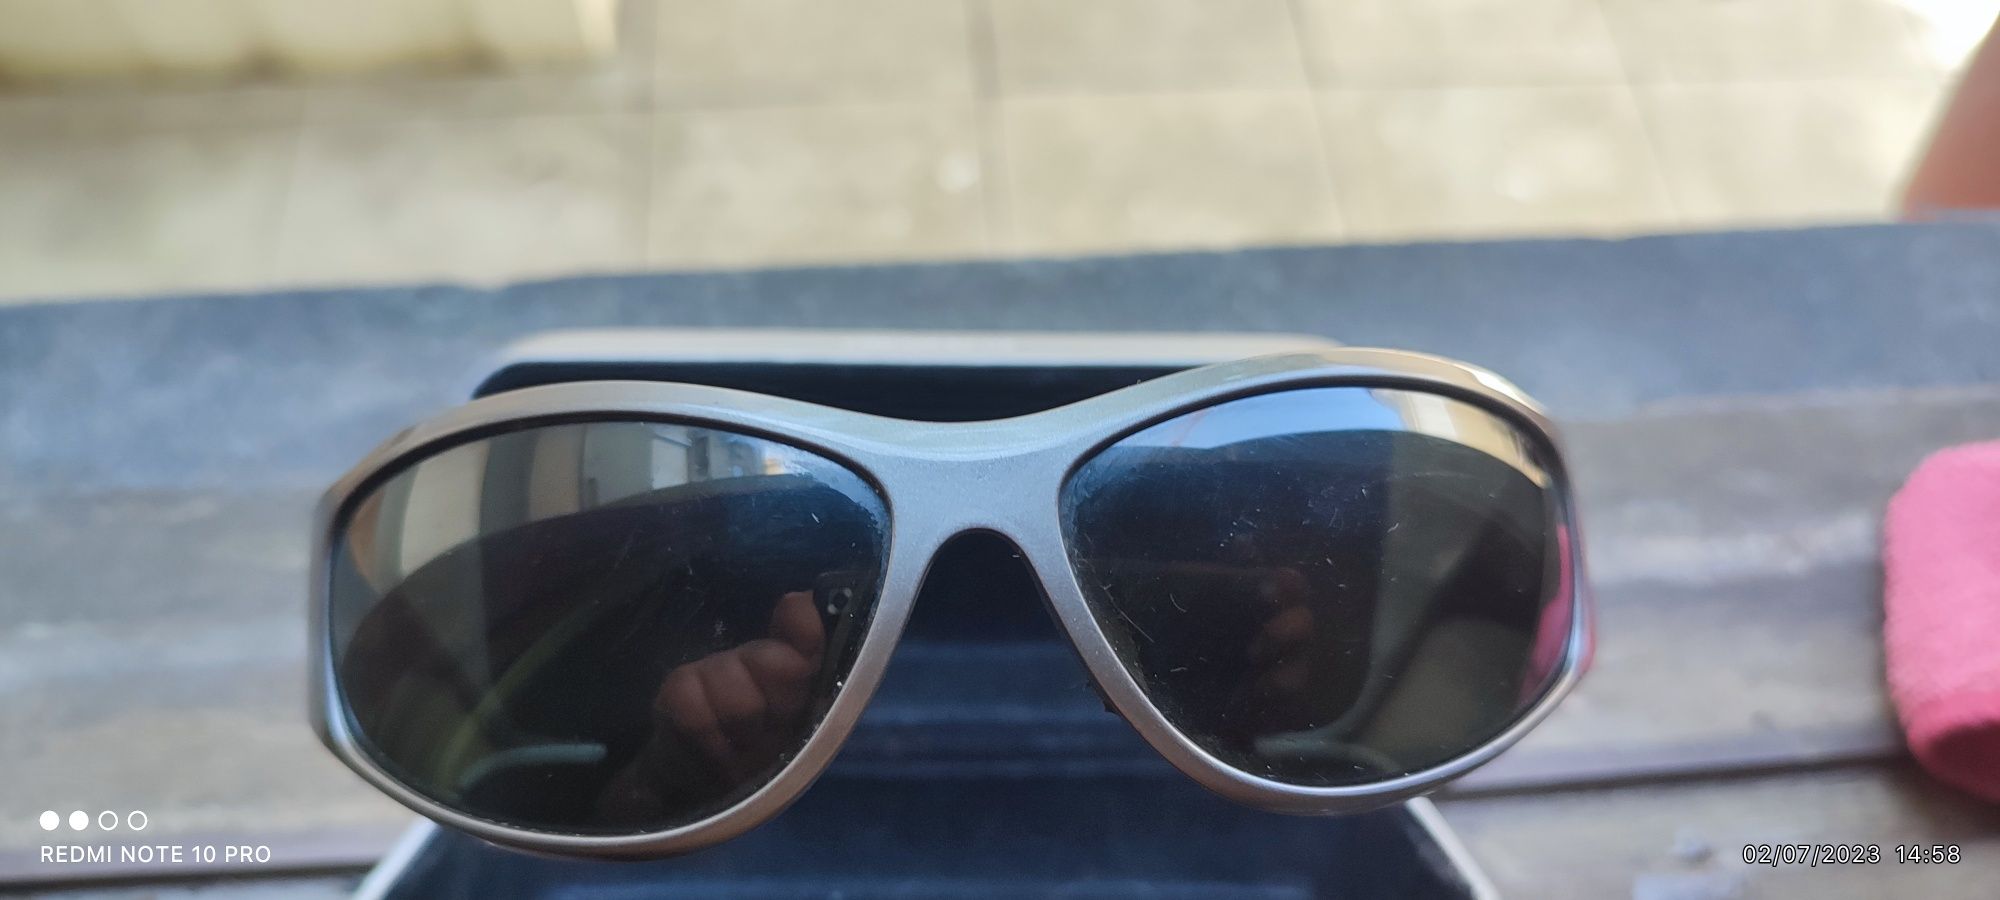 Vendo Óculos de Sol Bollé Polarized como Novos